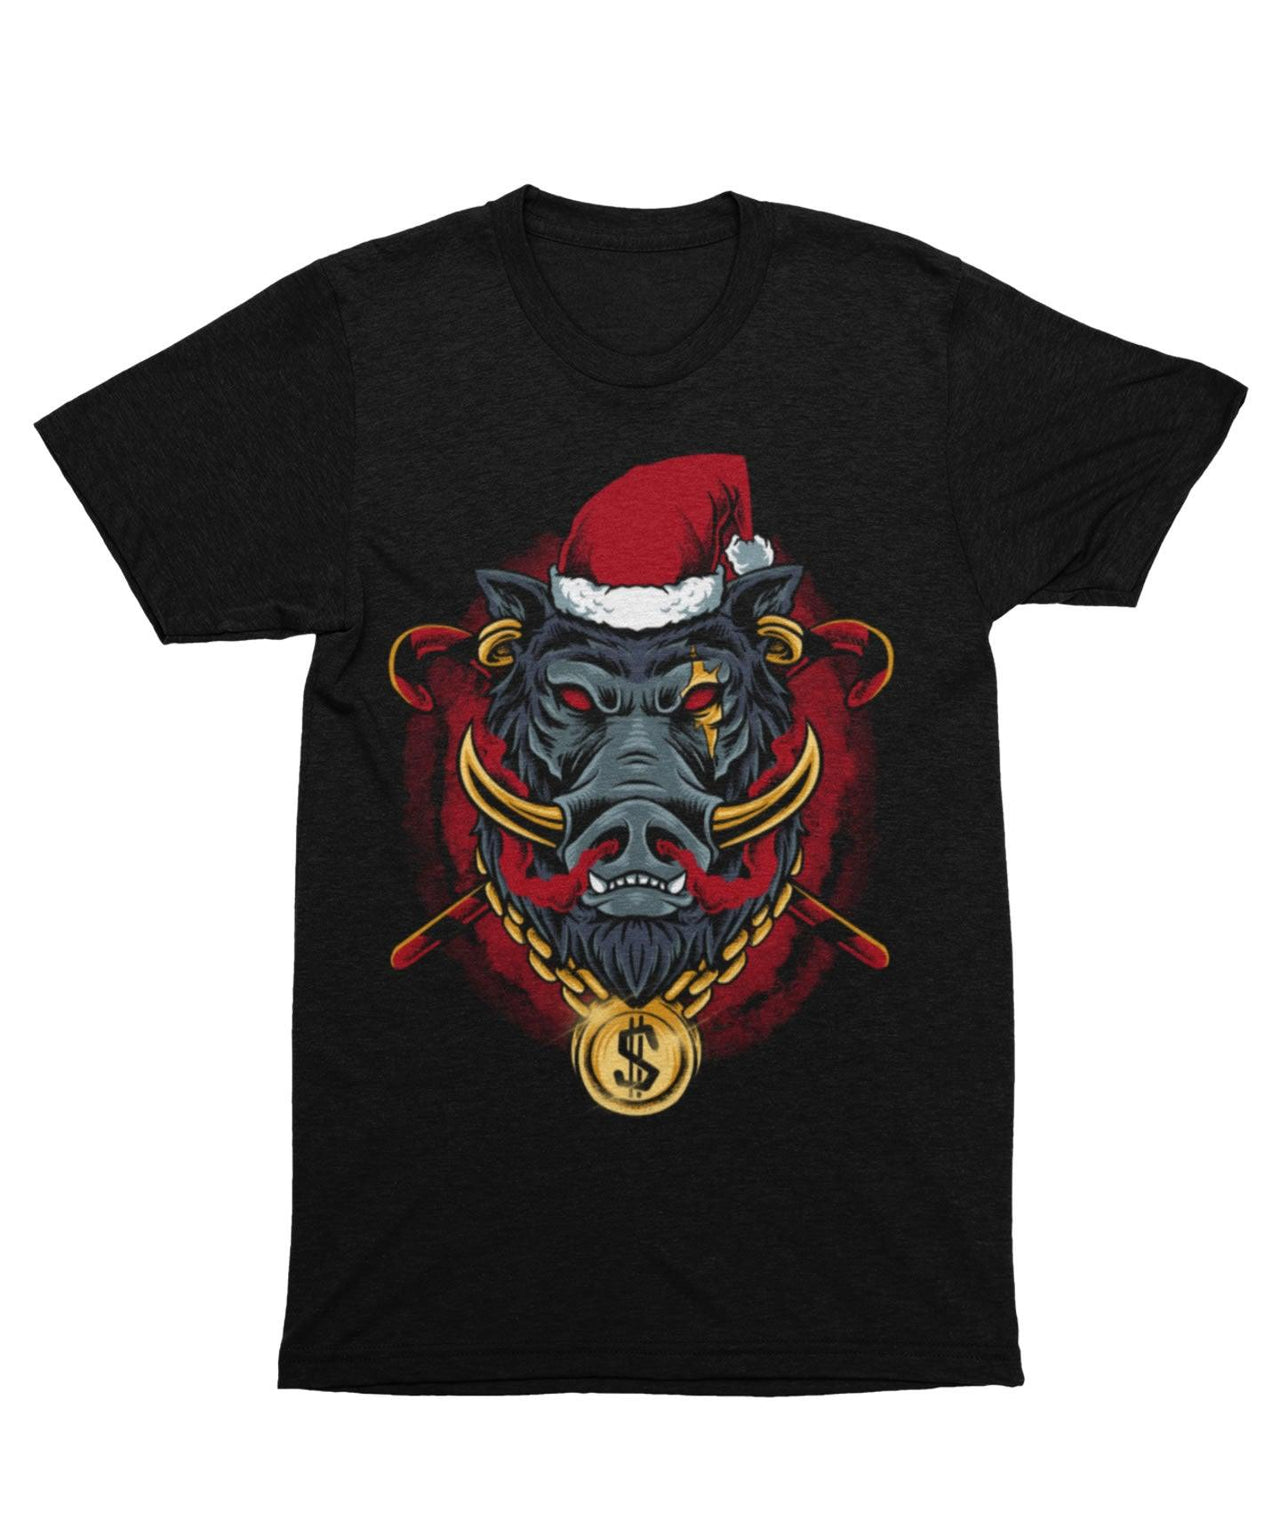 Golden Boar Santa Unisex Christmas Graphic T-Shirt For Men 8Ball